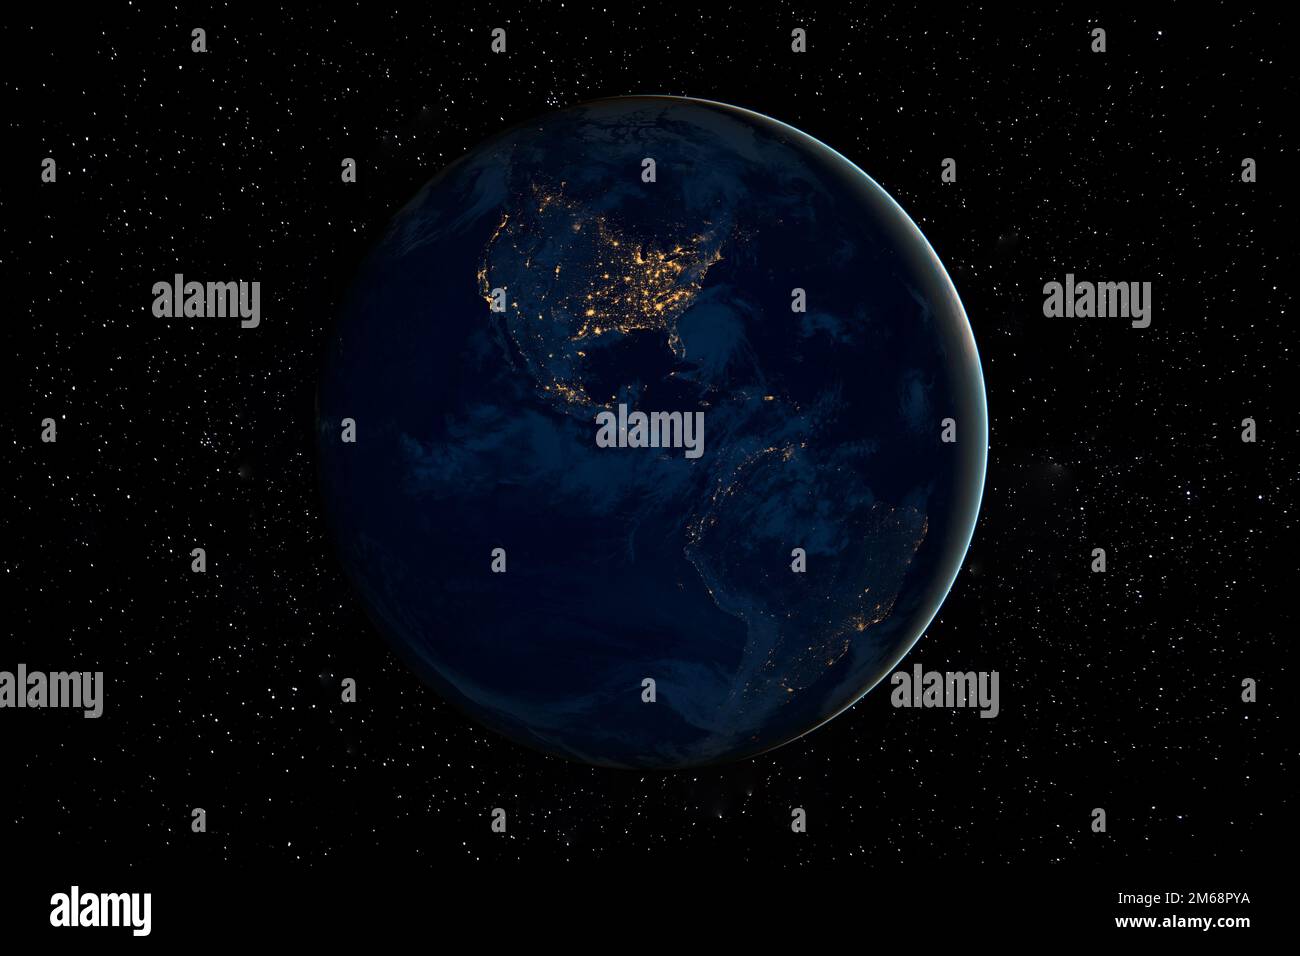 Planet Erde in dunkler Nacht im All, umgeben von Sternen. Diese Bildelemente wurden von der NASA bereitgestellt. Stockfoto